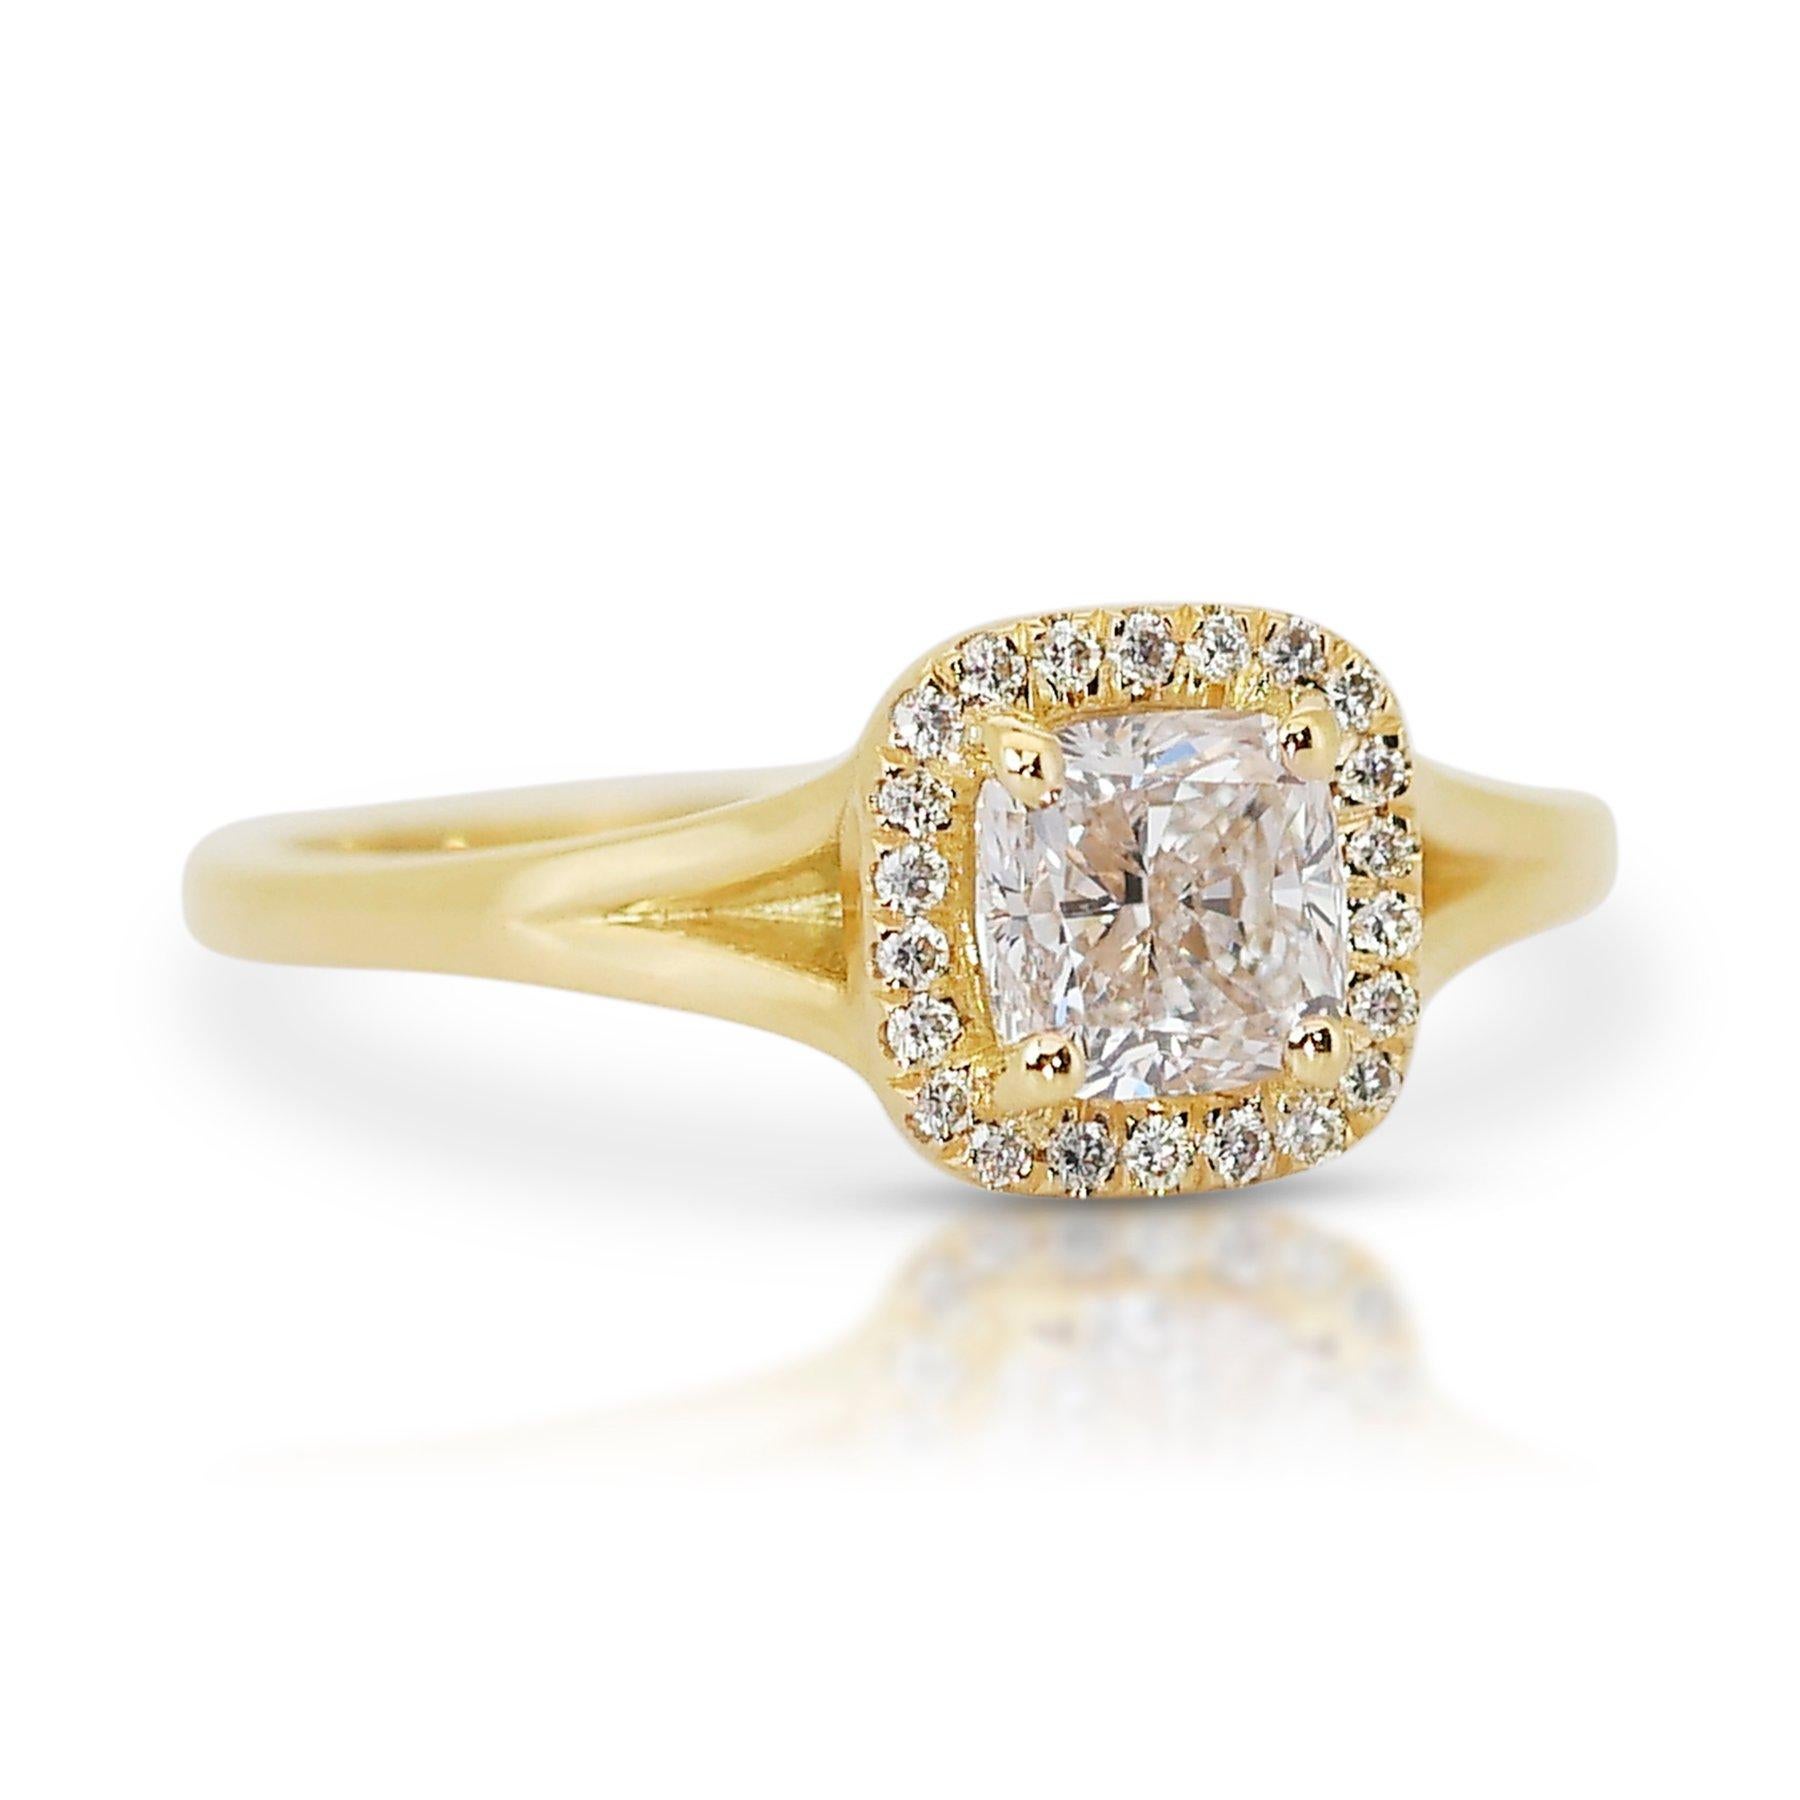 Sparkling 1,63 Karat Diamant-Halo-Ring aus 18 Karat Gelbgold - GIA zertifiziert

Lassen Sie sich von der zeitlosen Schönheit dieses exquisiten Rings aus 18 Karat Gelbgold verzaubern, der von einem wunderschönen Diamanten im Kissenschliff von 1,50